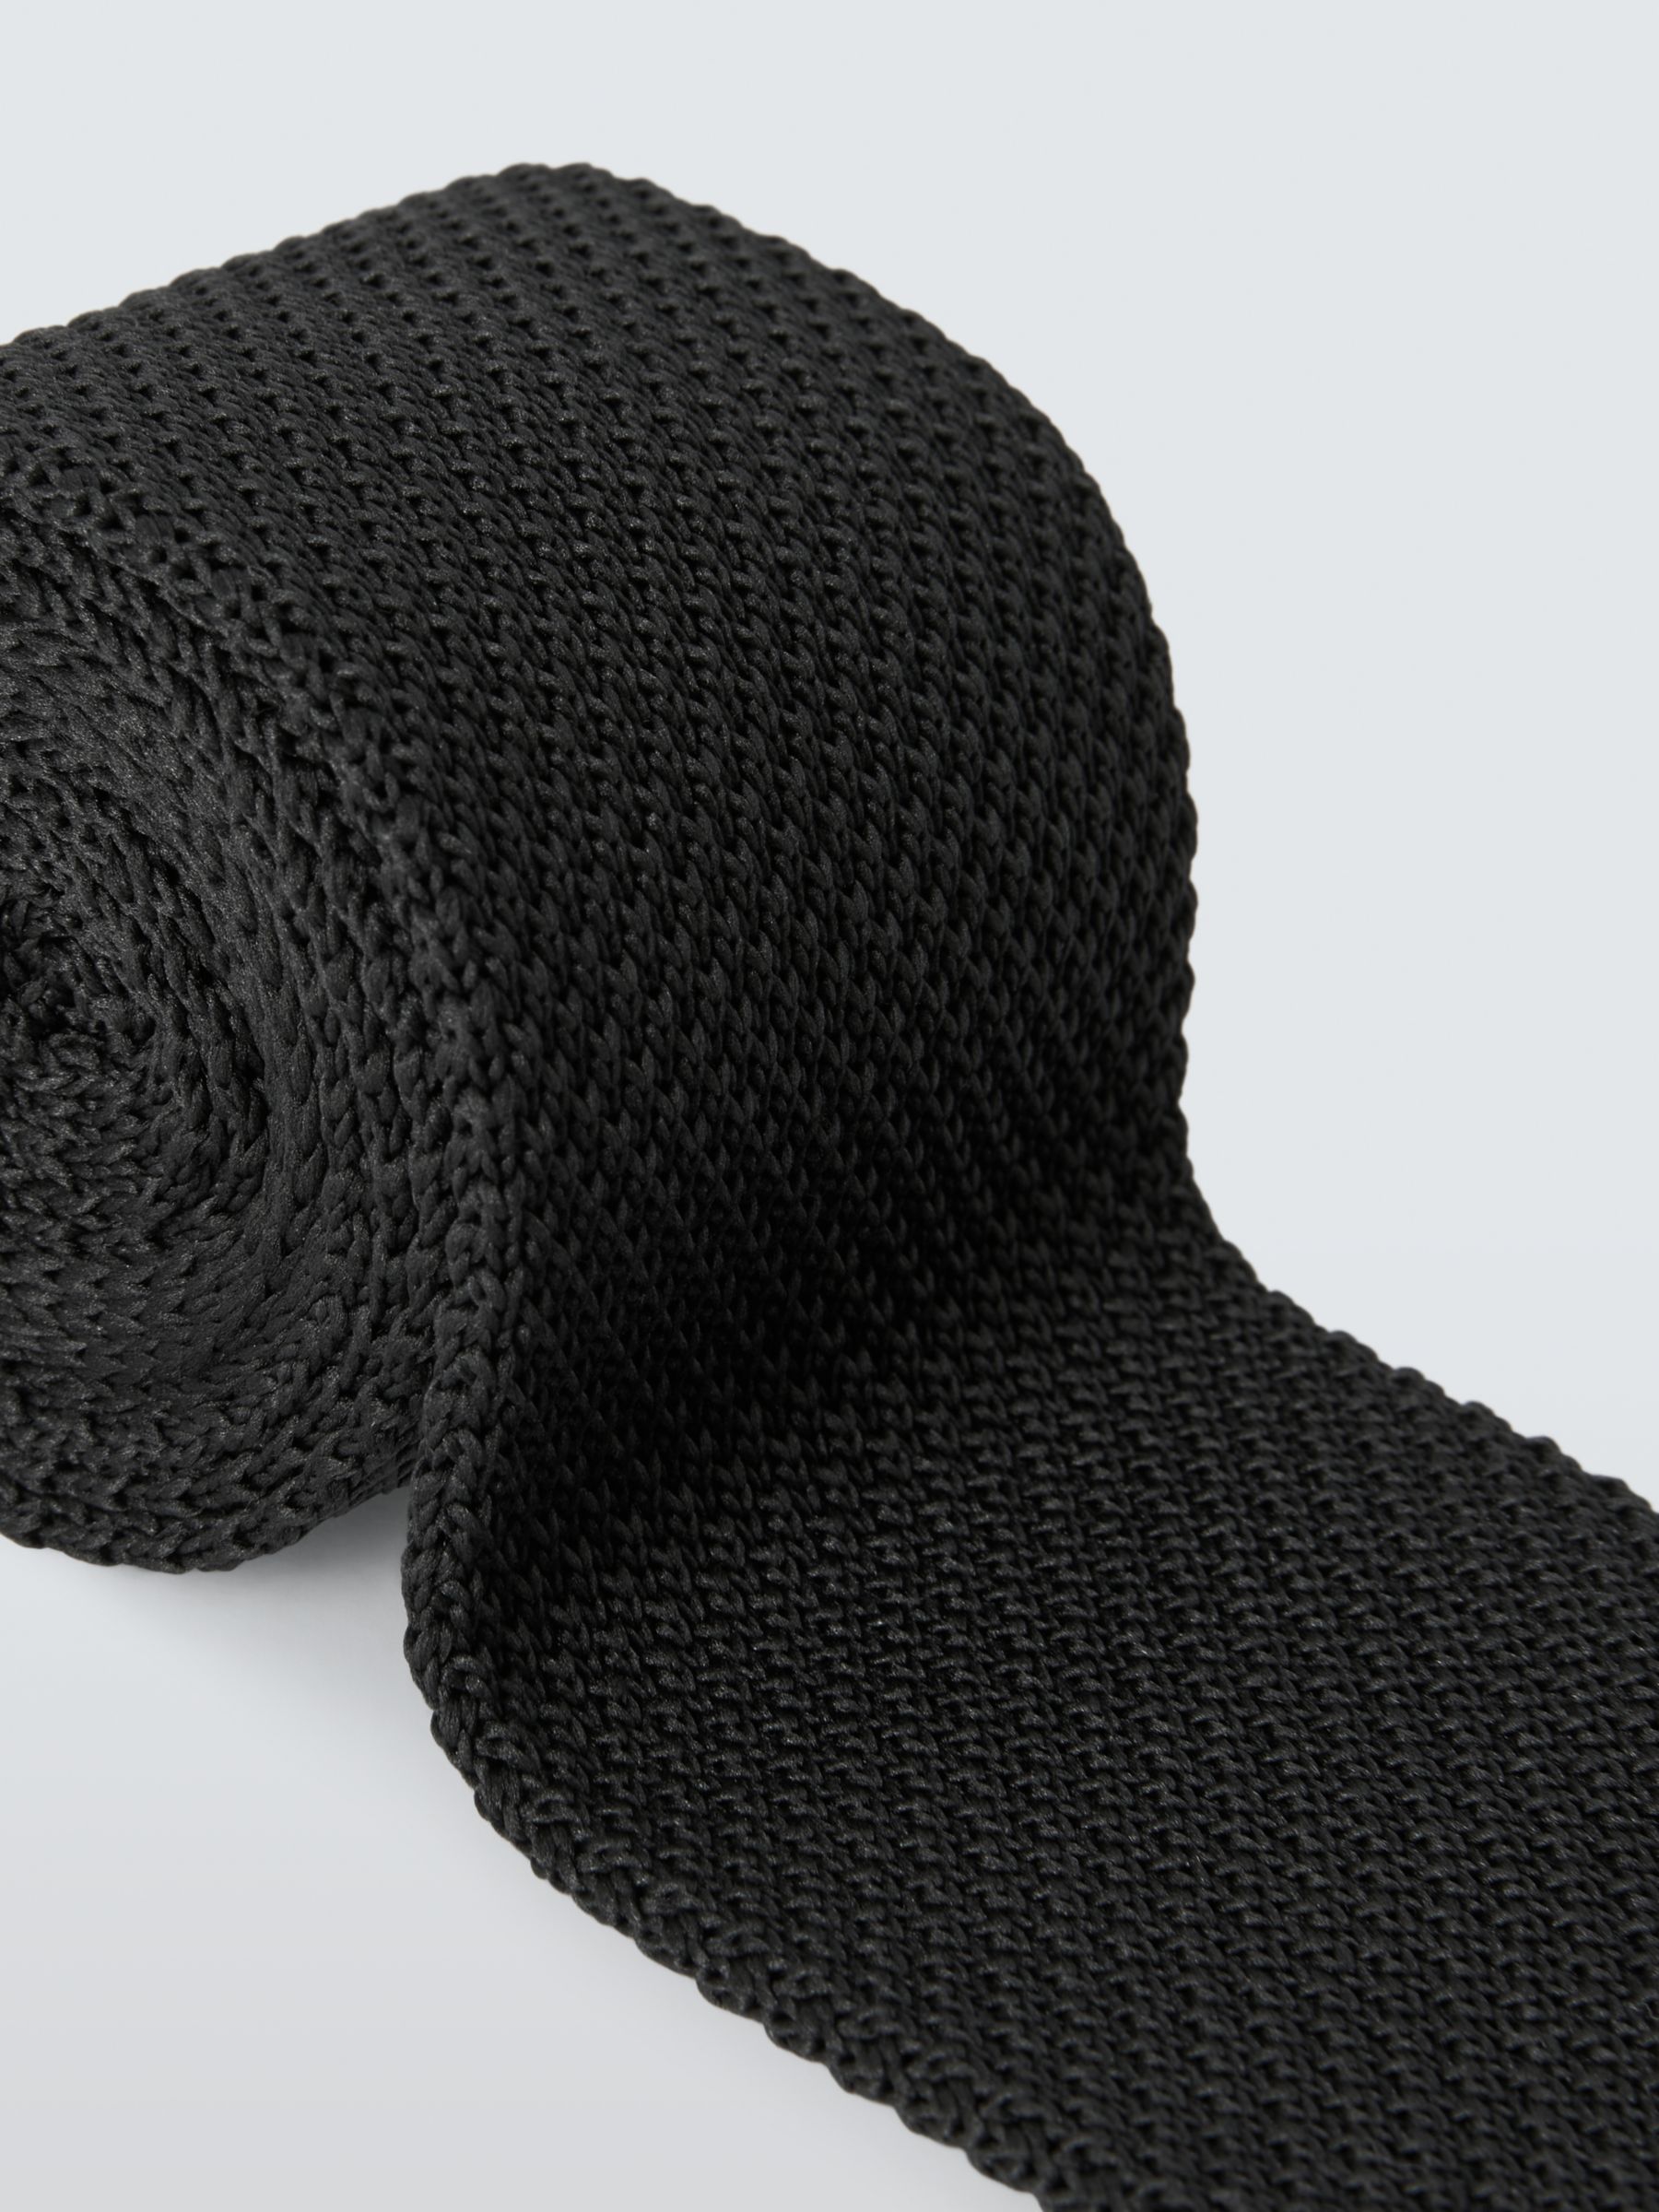 John Lewis Knitted Tie, Black